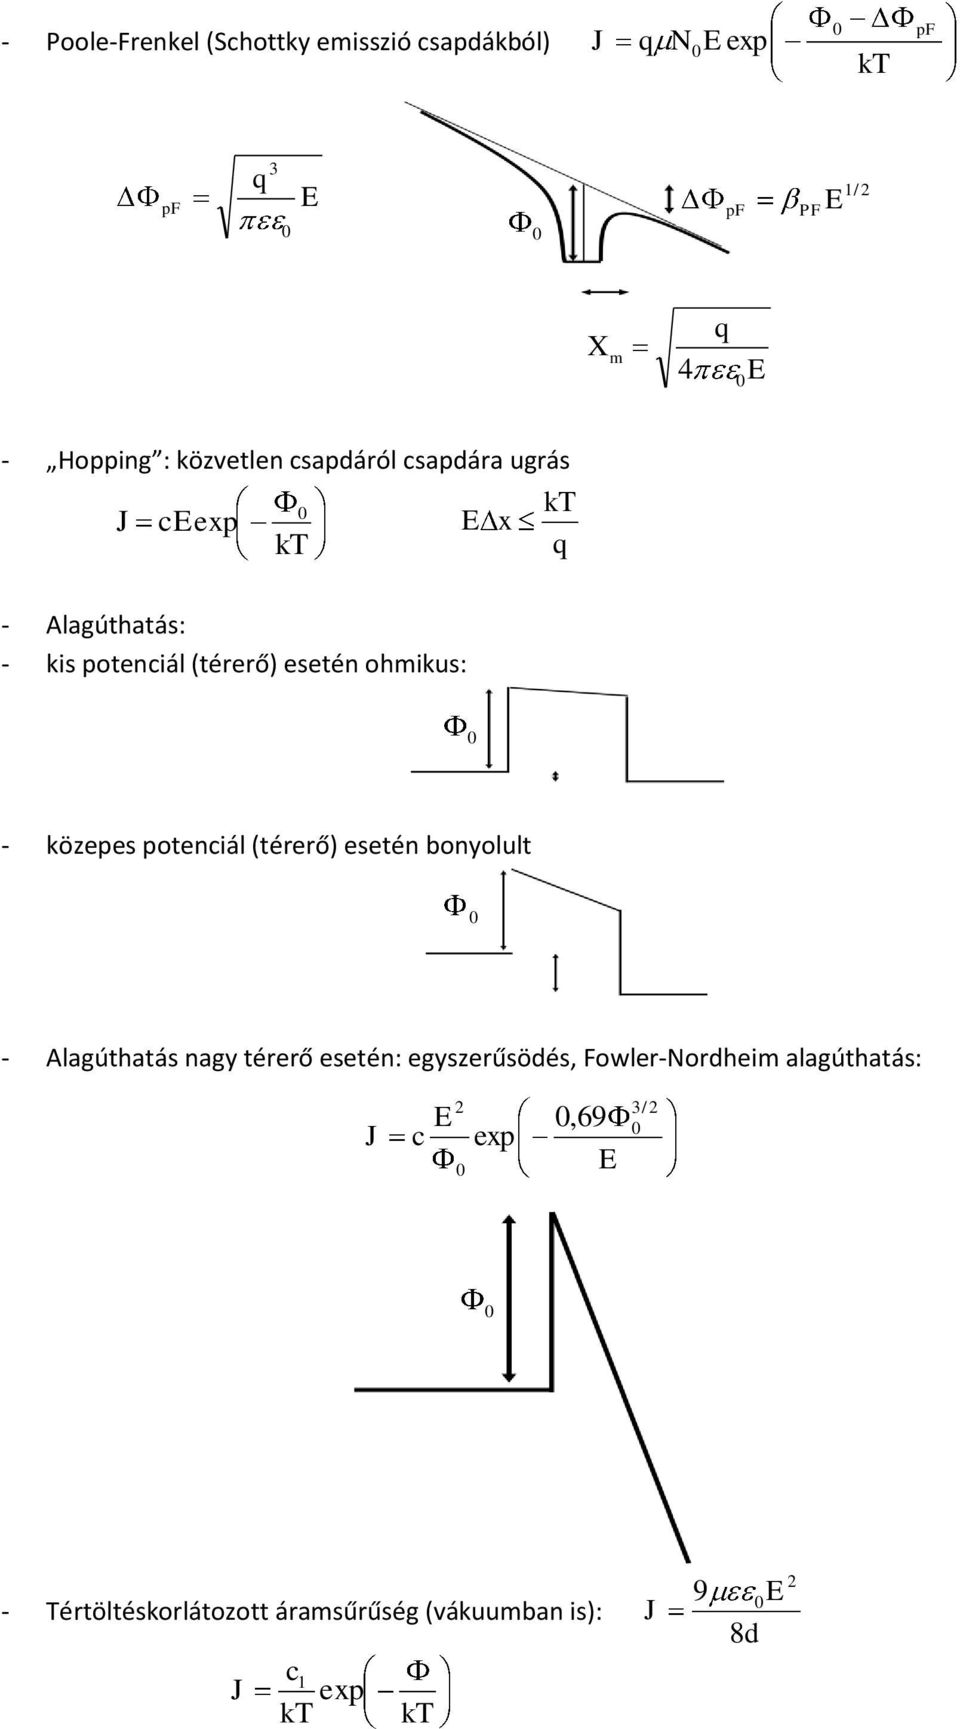 - közepes potenciál (térerő) esetén bonyolult - Alagúthatás nagy térerő esetén: egyszerűsödés, Fowler-Nordheim